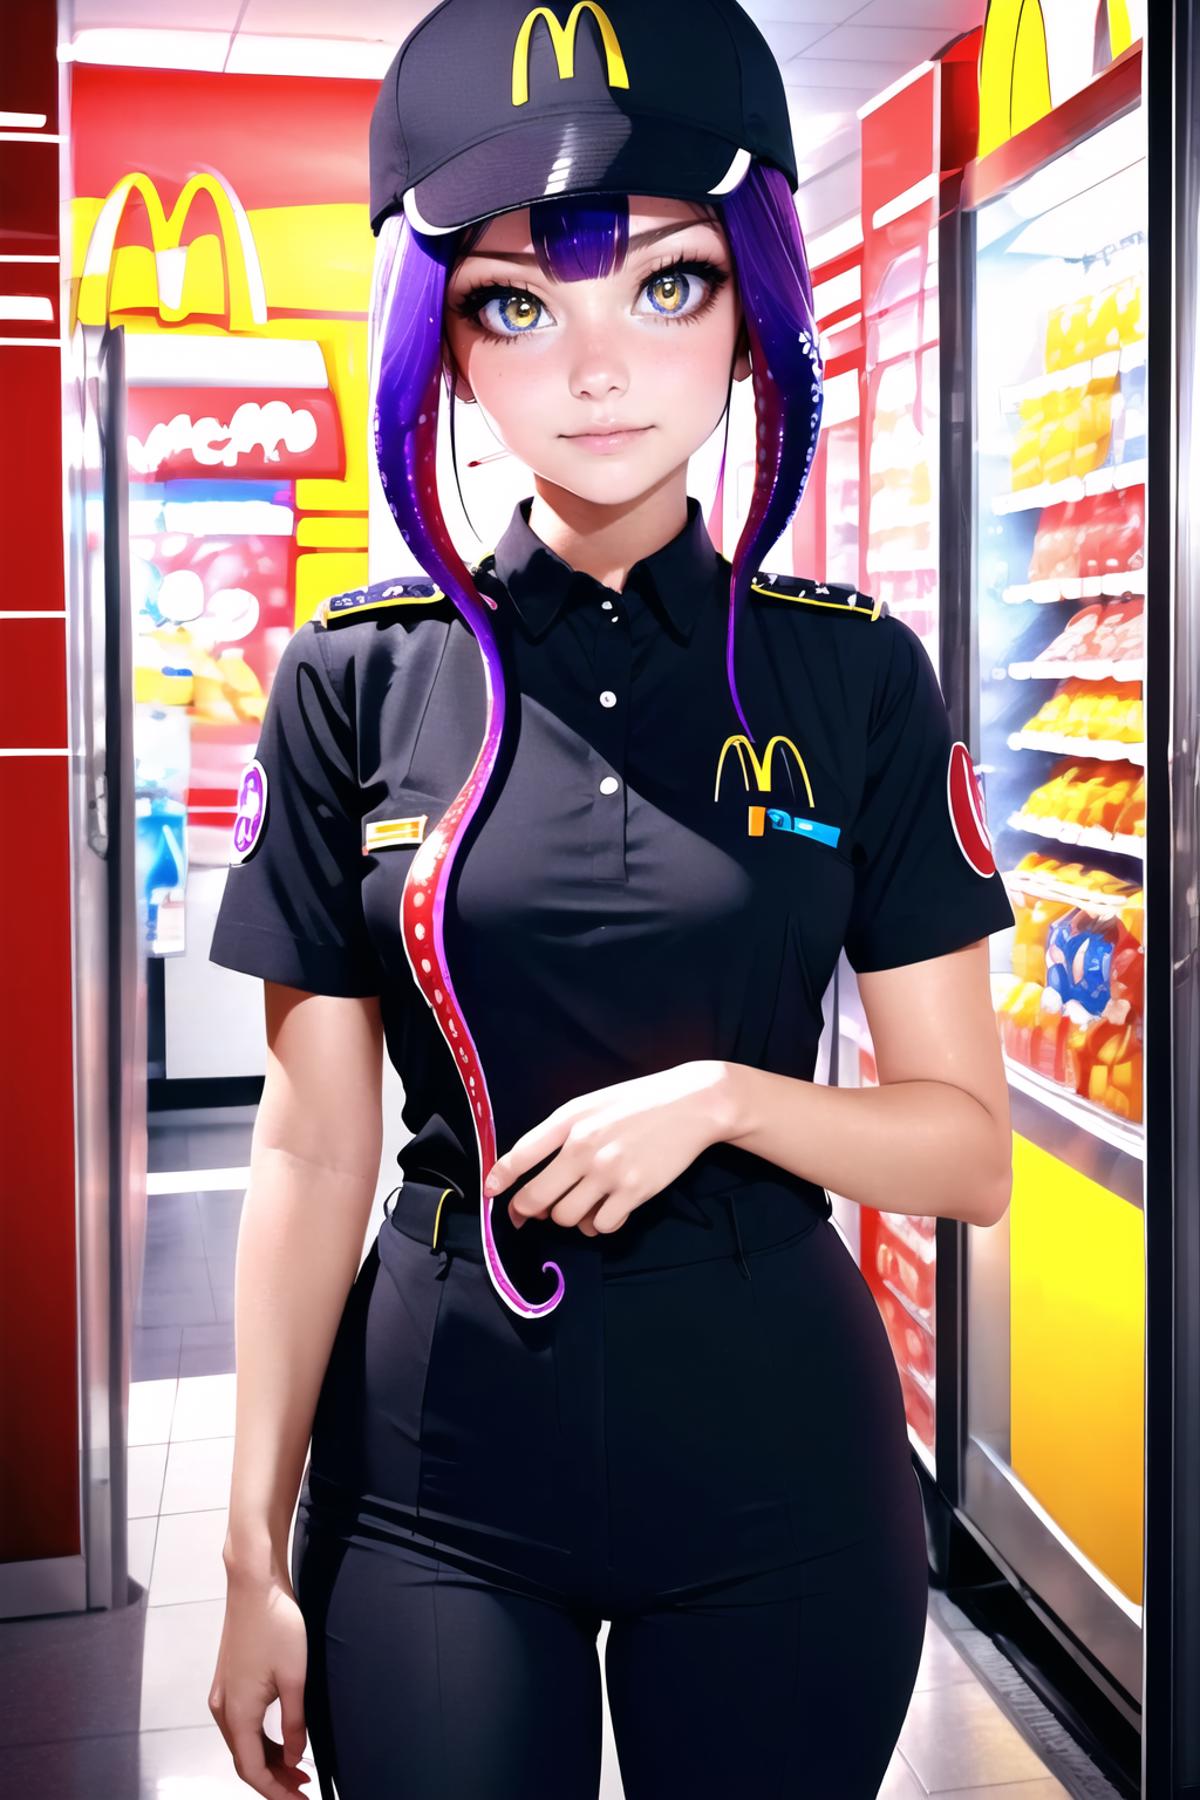 McDonalds Uniform (black) | Outfit LoRA image by FallenIncursio